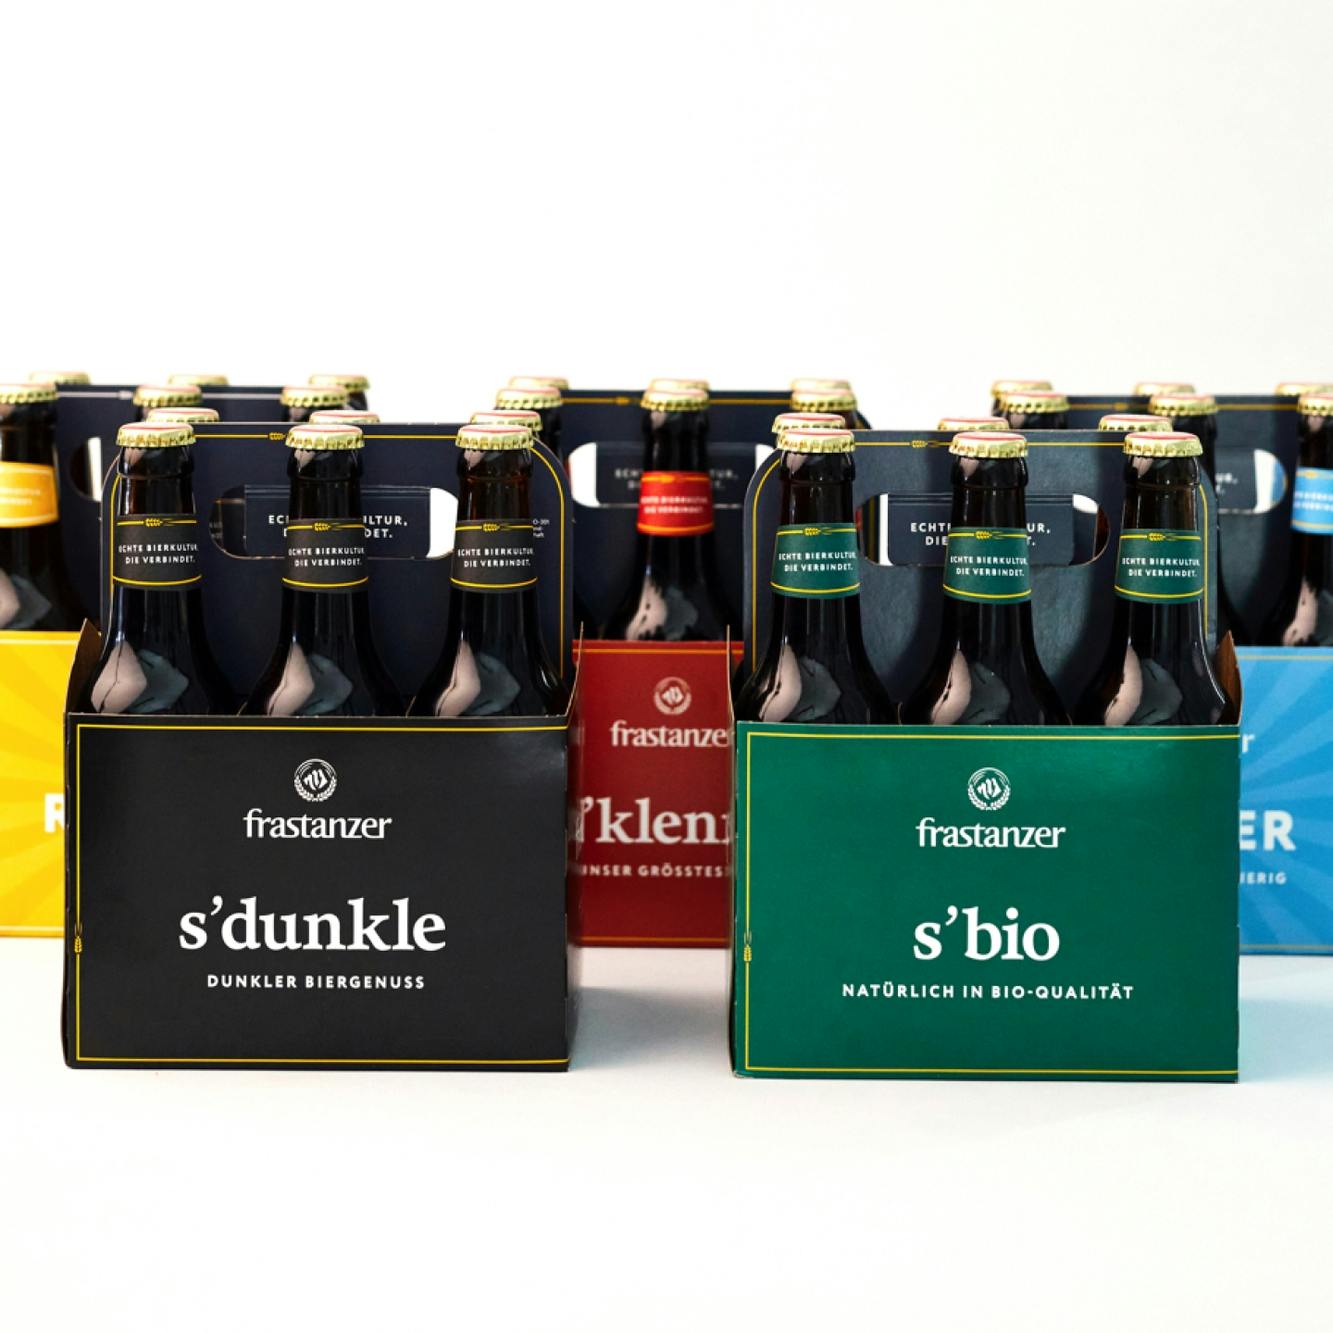 Foto von mehreren 6-er Trägern verschiedener Frastanzer Biere © gobiq